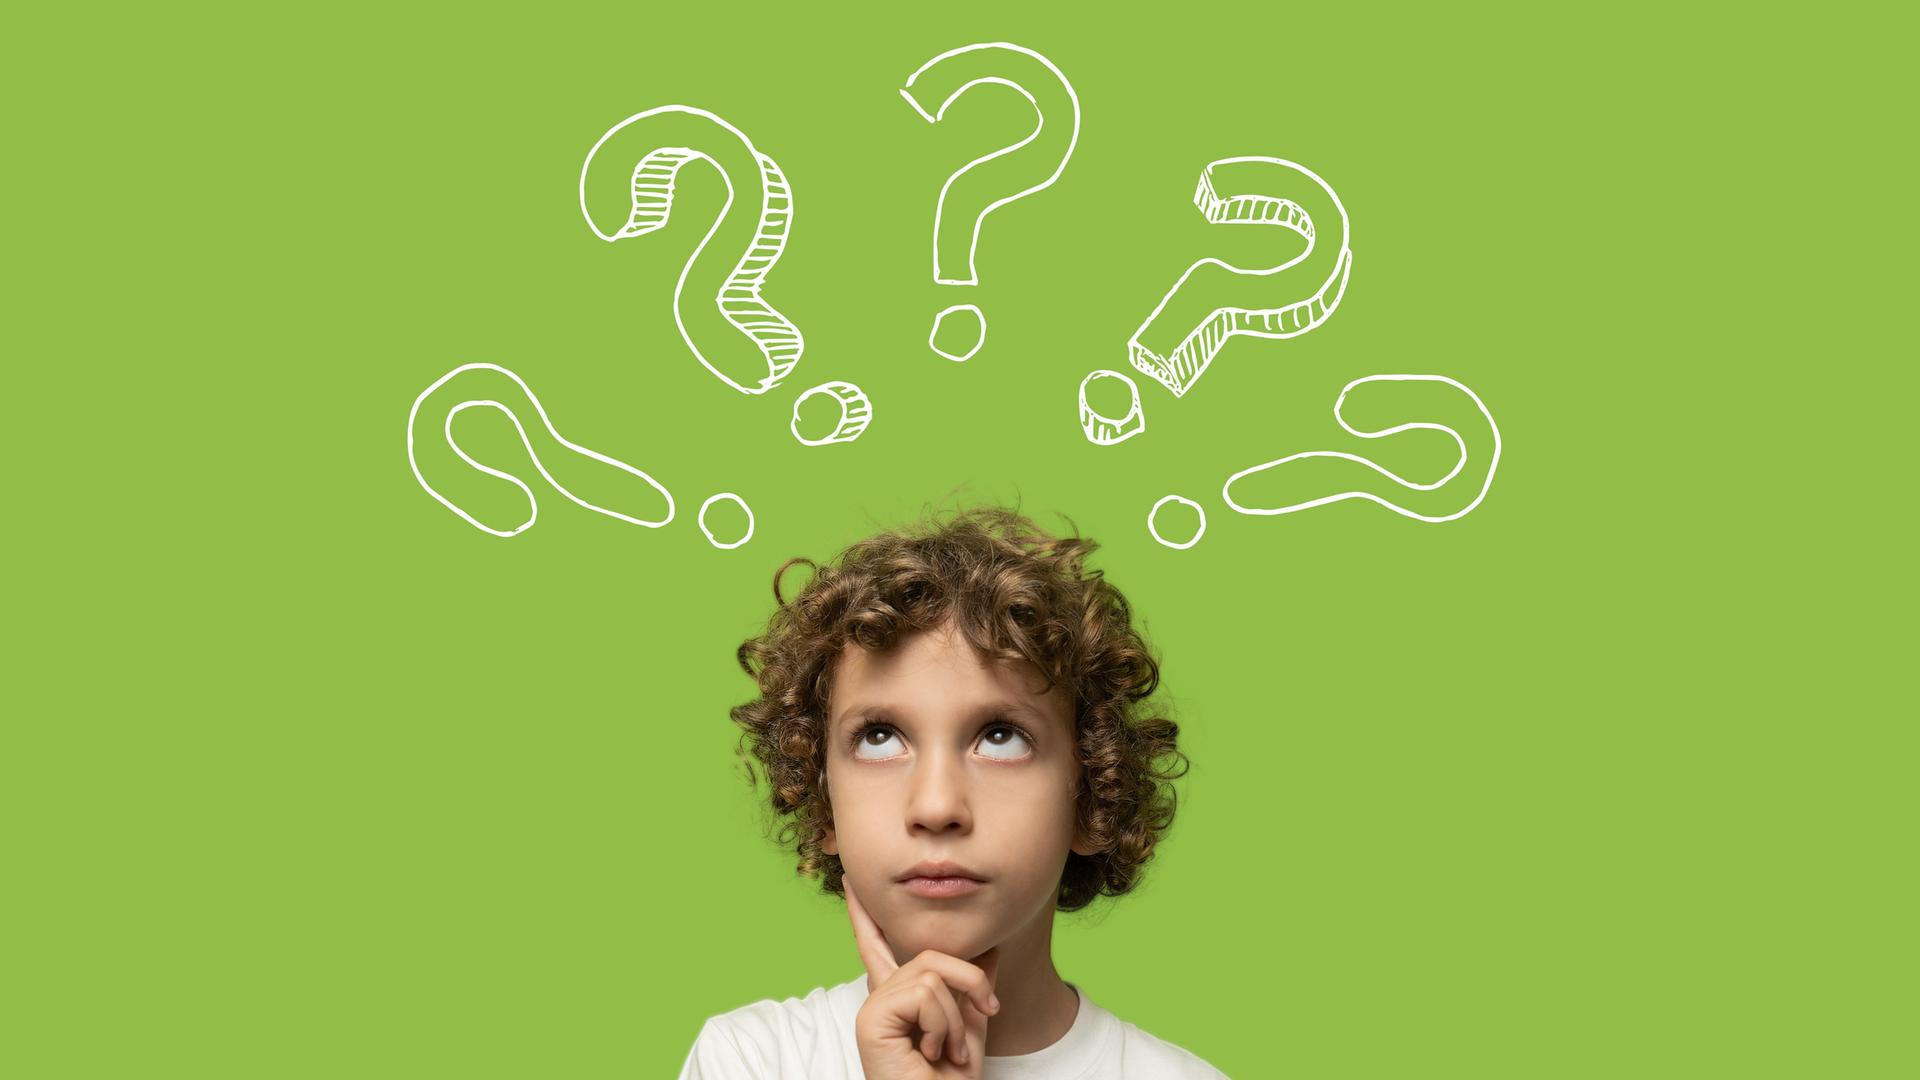 Ein Kind vor grünem Hintergrund, den Finger grübelnd ans Kinn gelegt. Im Hintergrund illustrierte Fragezeichen.